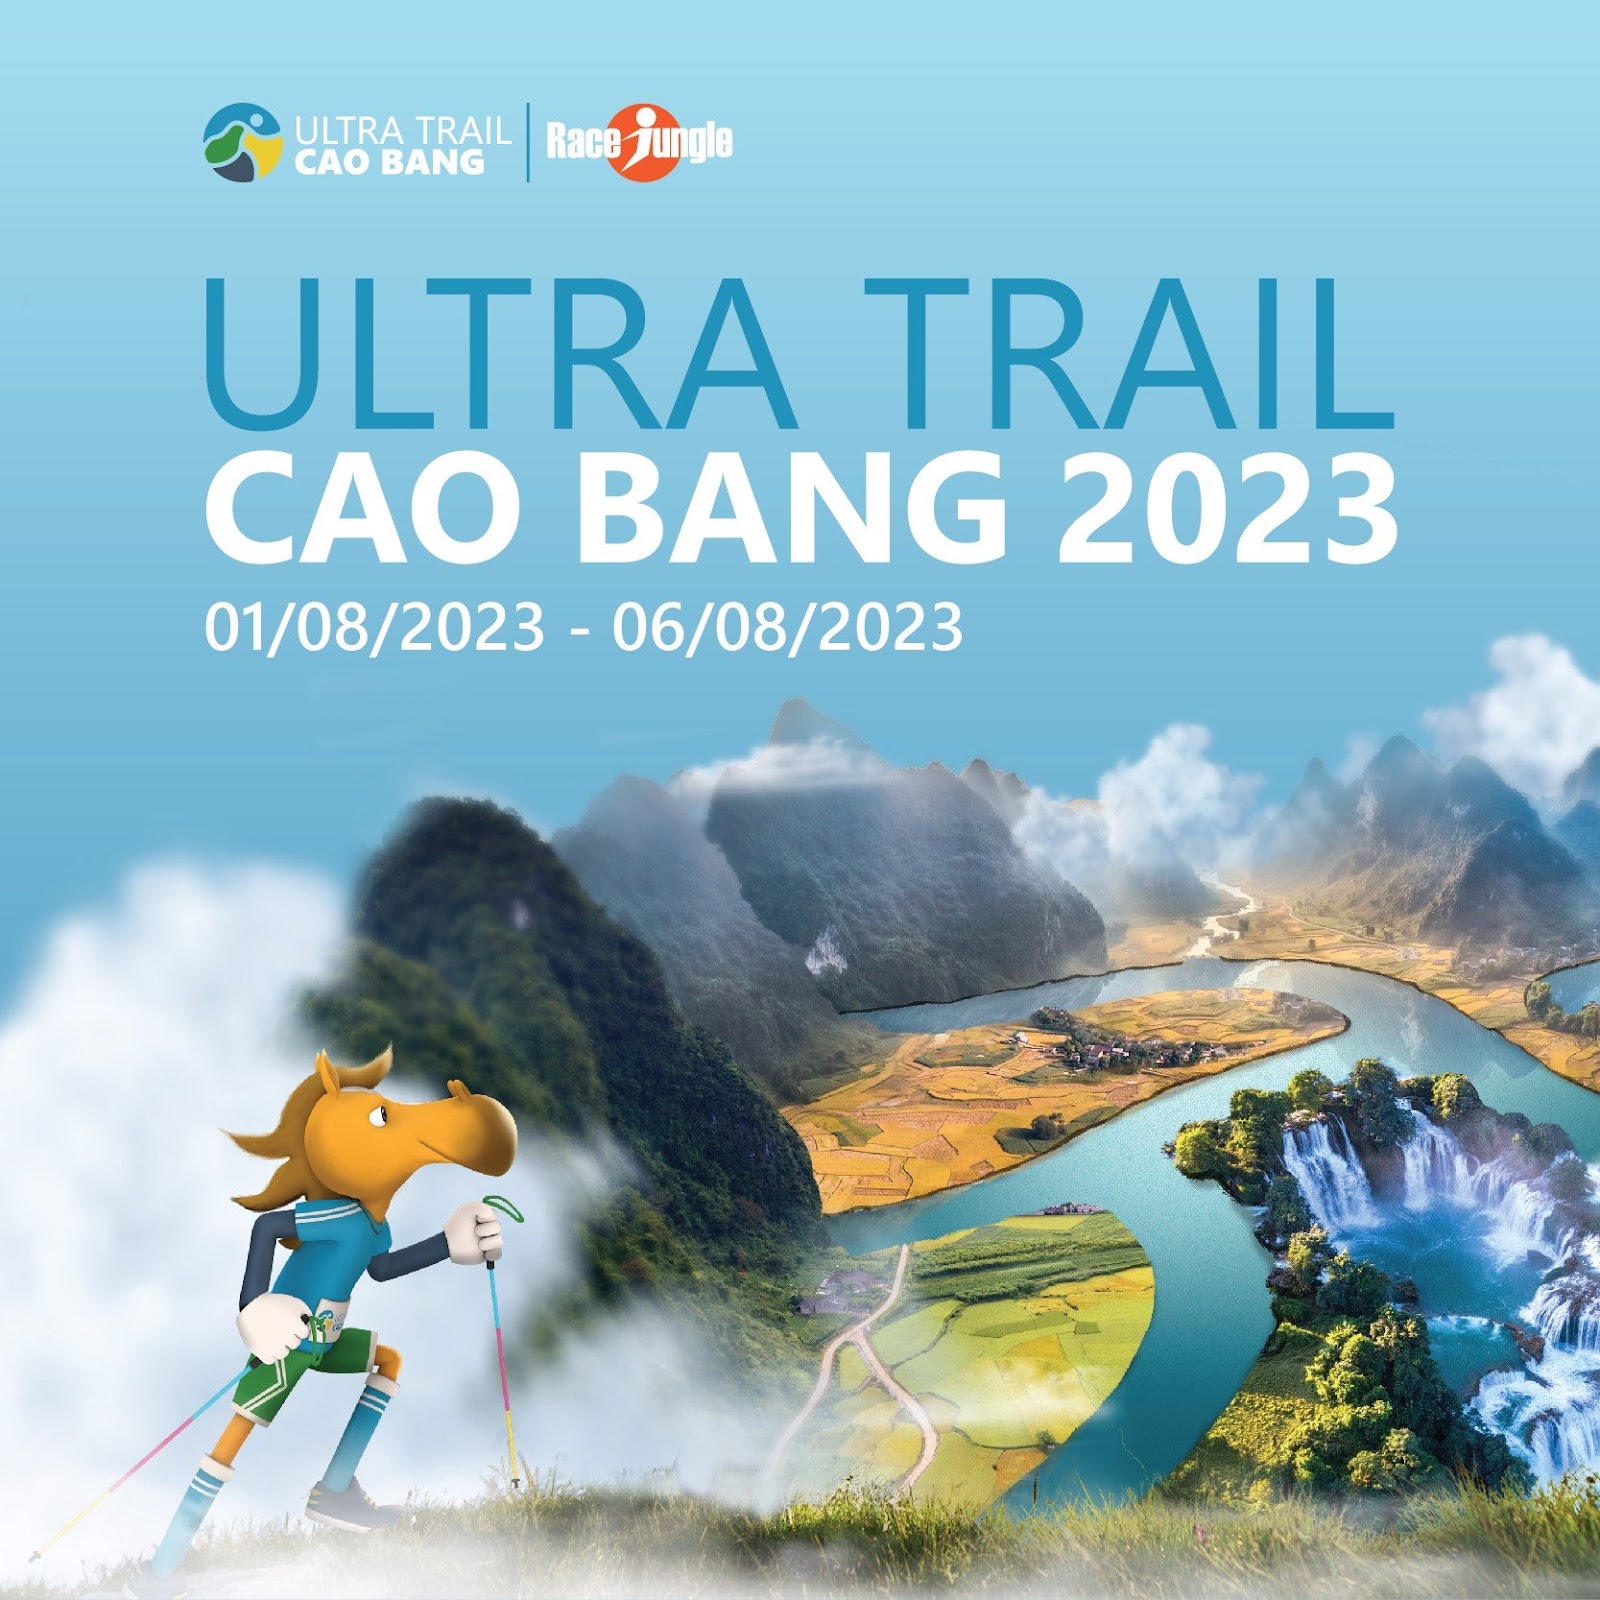  ULTRA TRAIL CAO BANG 2023 